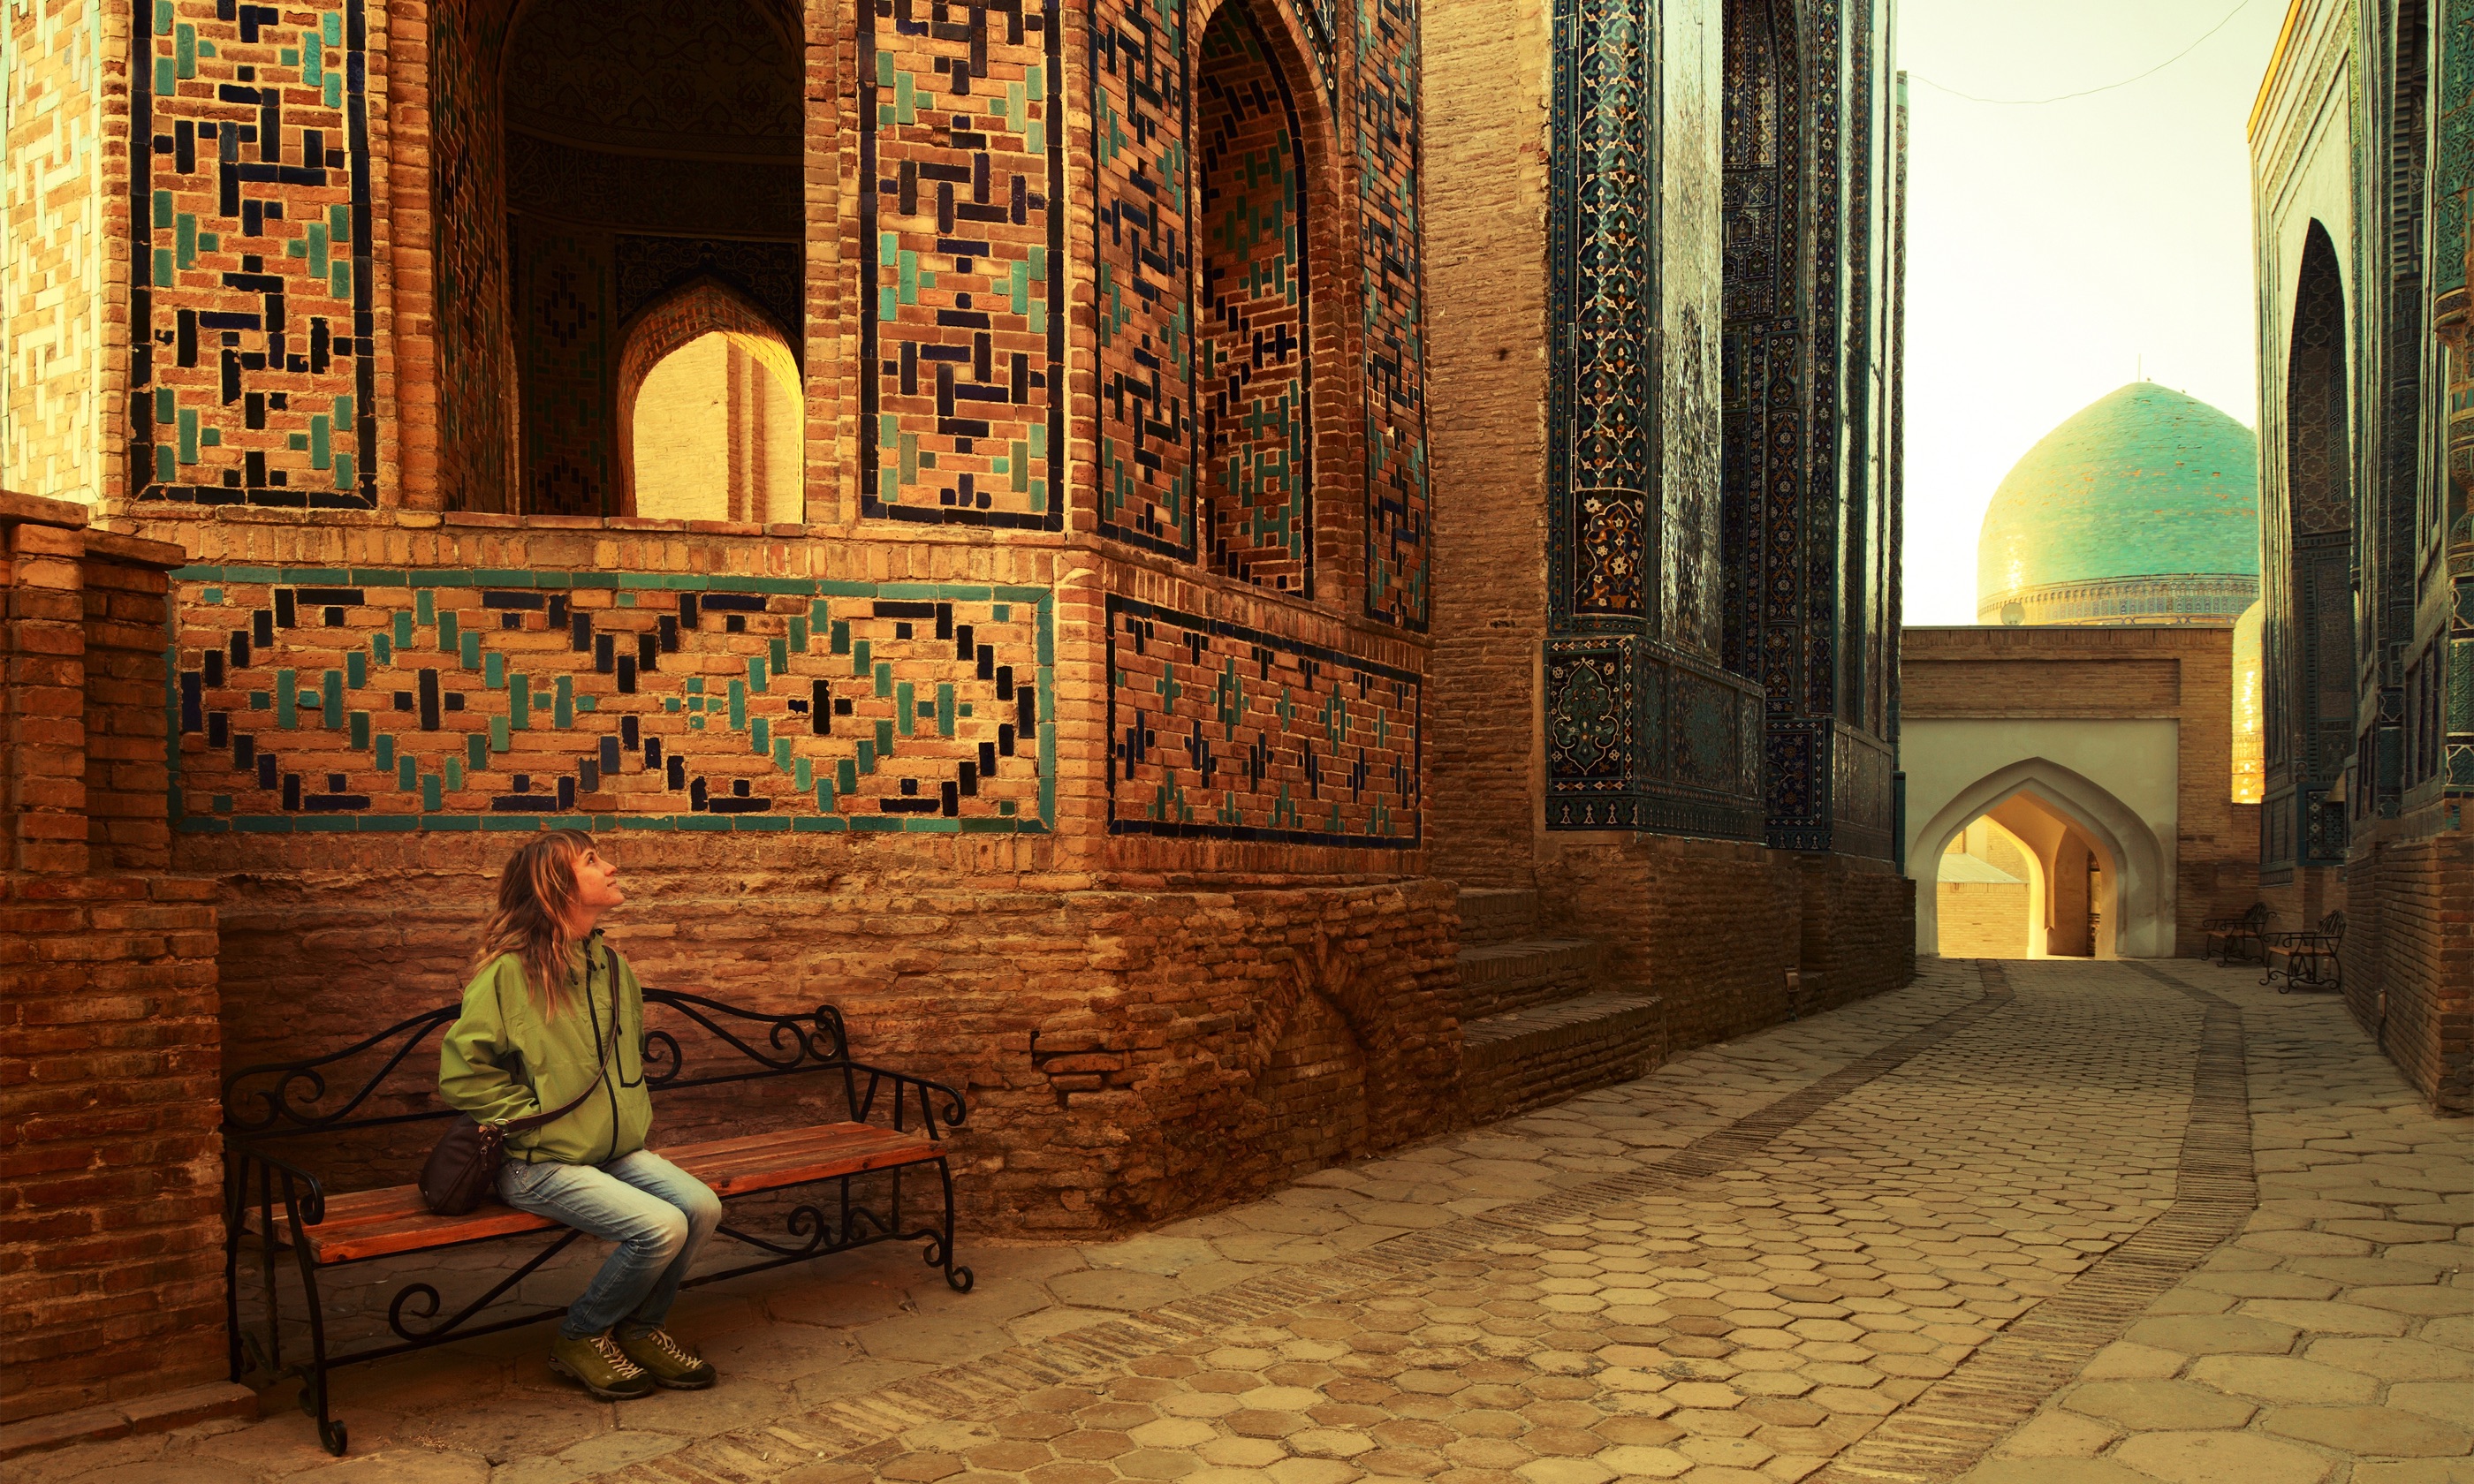 Contemplating Samarkand (Shutterstock.com)